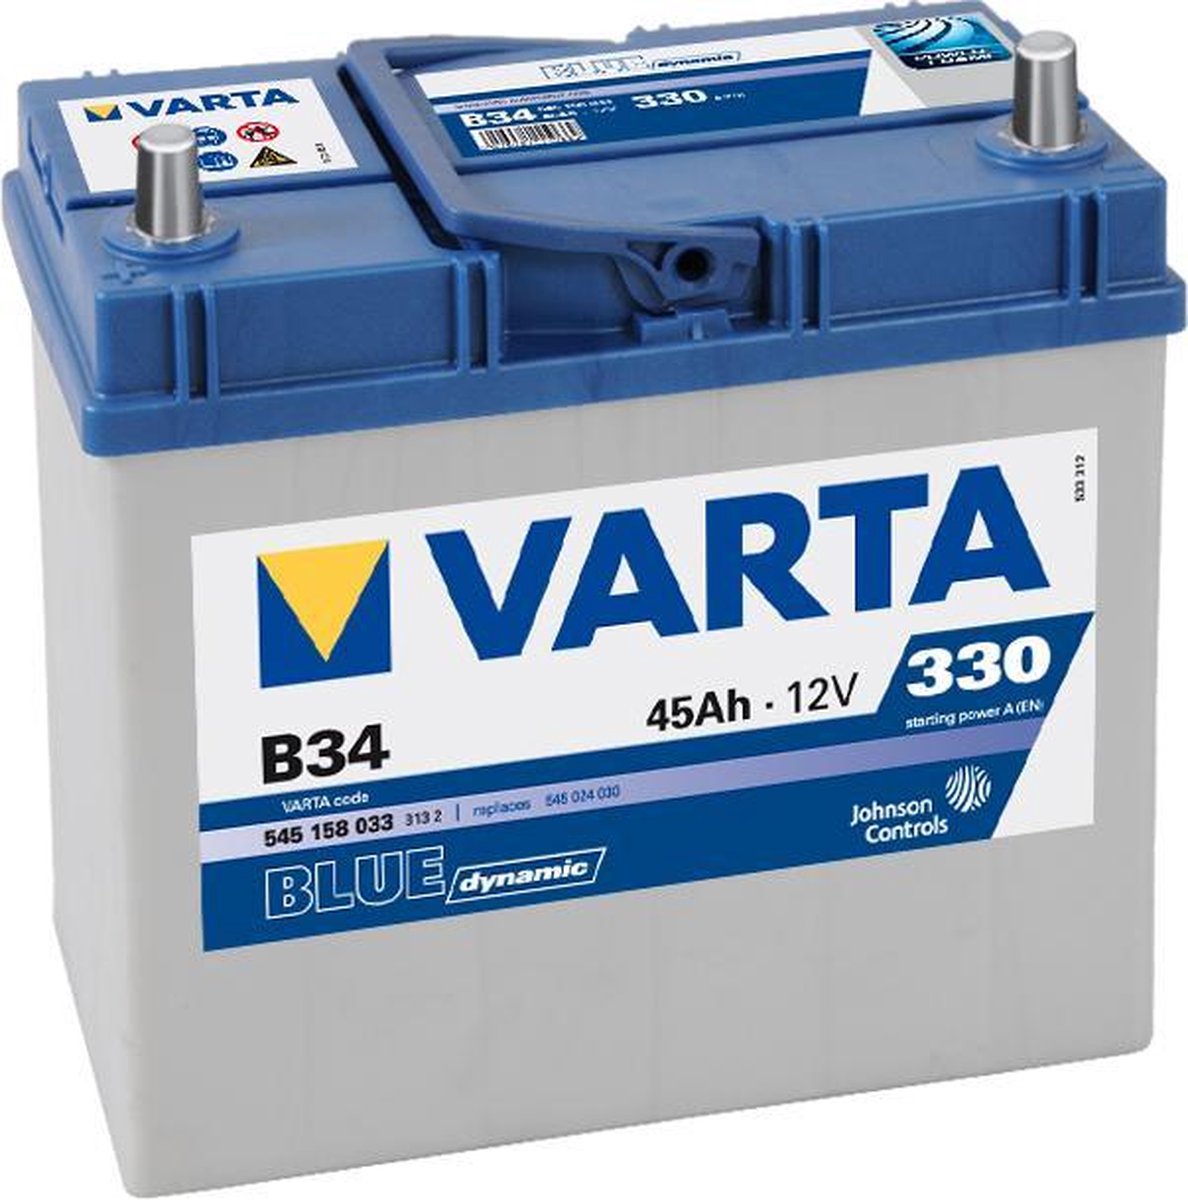 Varta B33. Autobatterie Varta 45Ah 12V